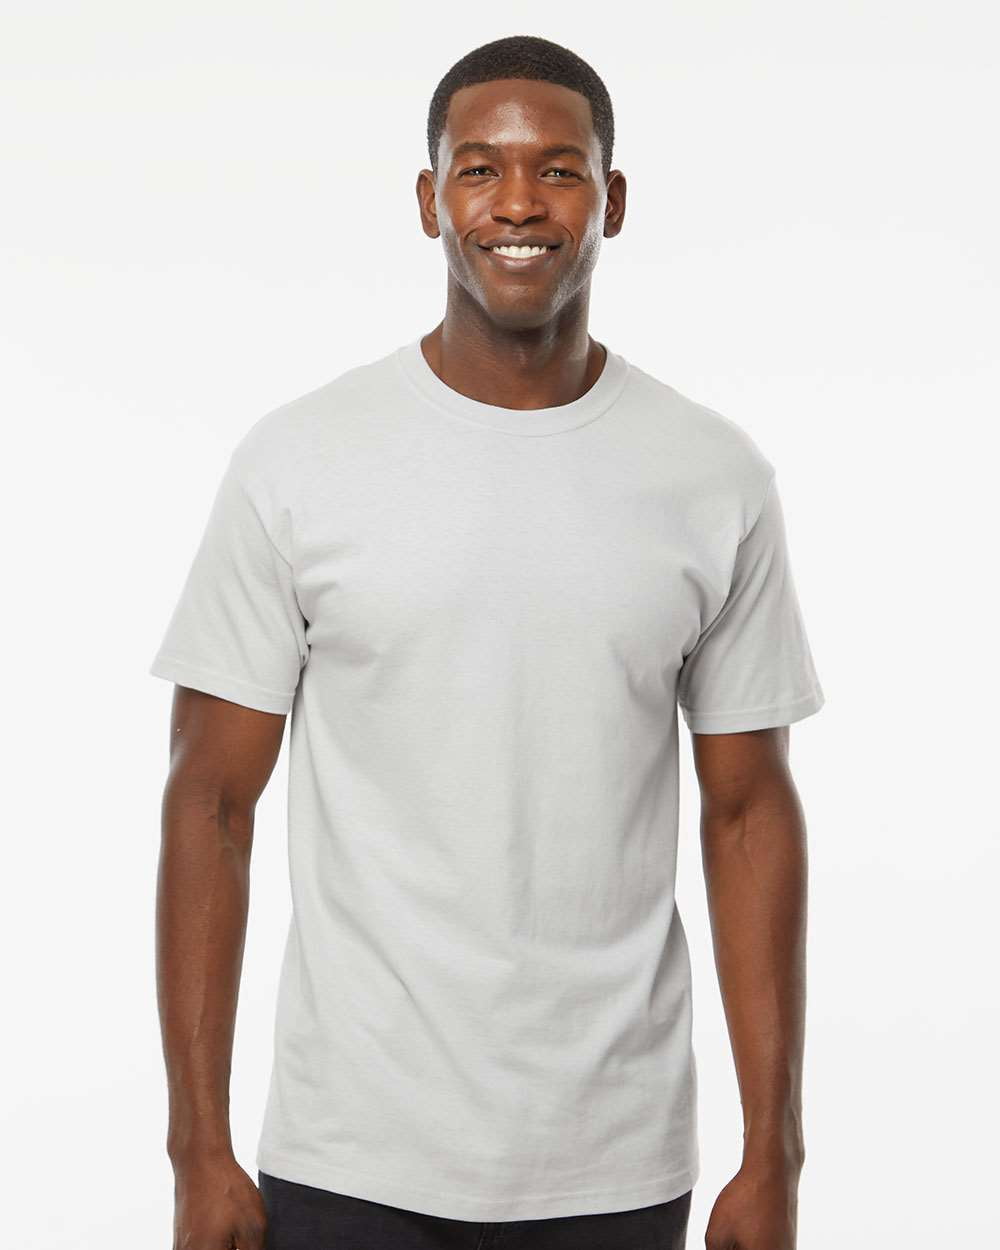 M&O Gold Soft Touch T-Shirt - Walmart.com